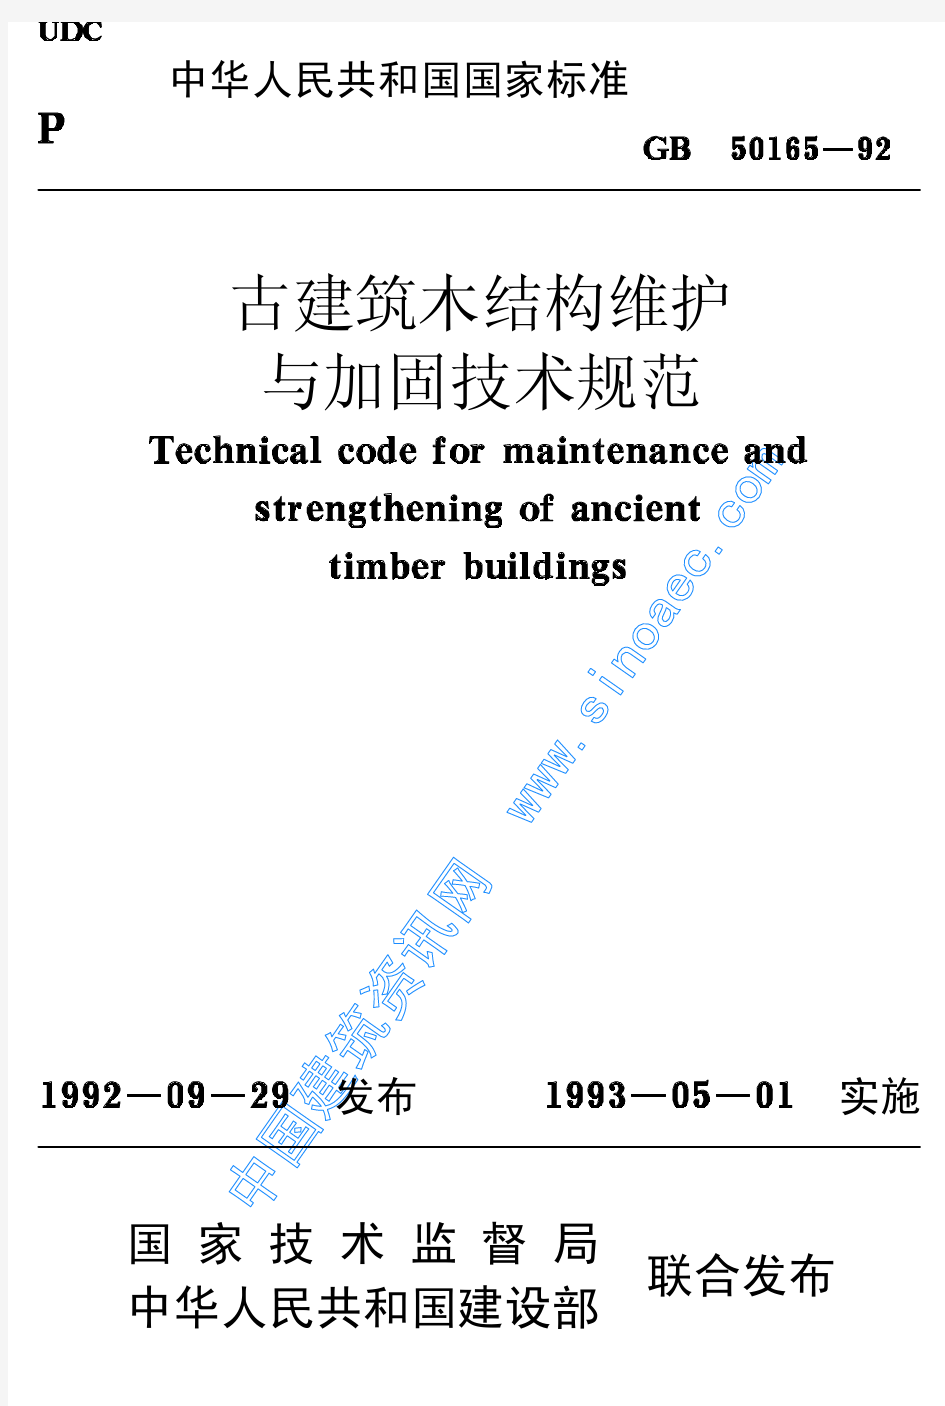 GB50165-92 古建筑木结构维护与加固技术规范